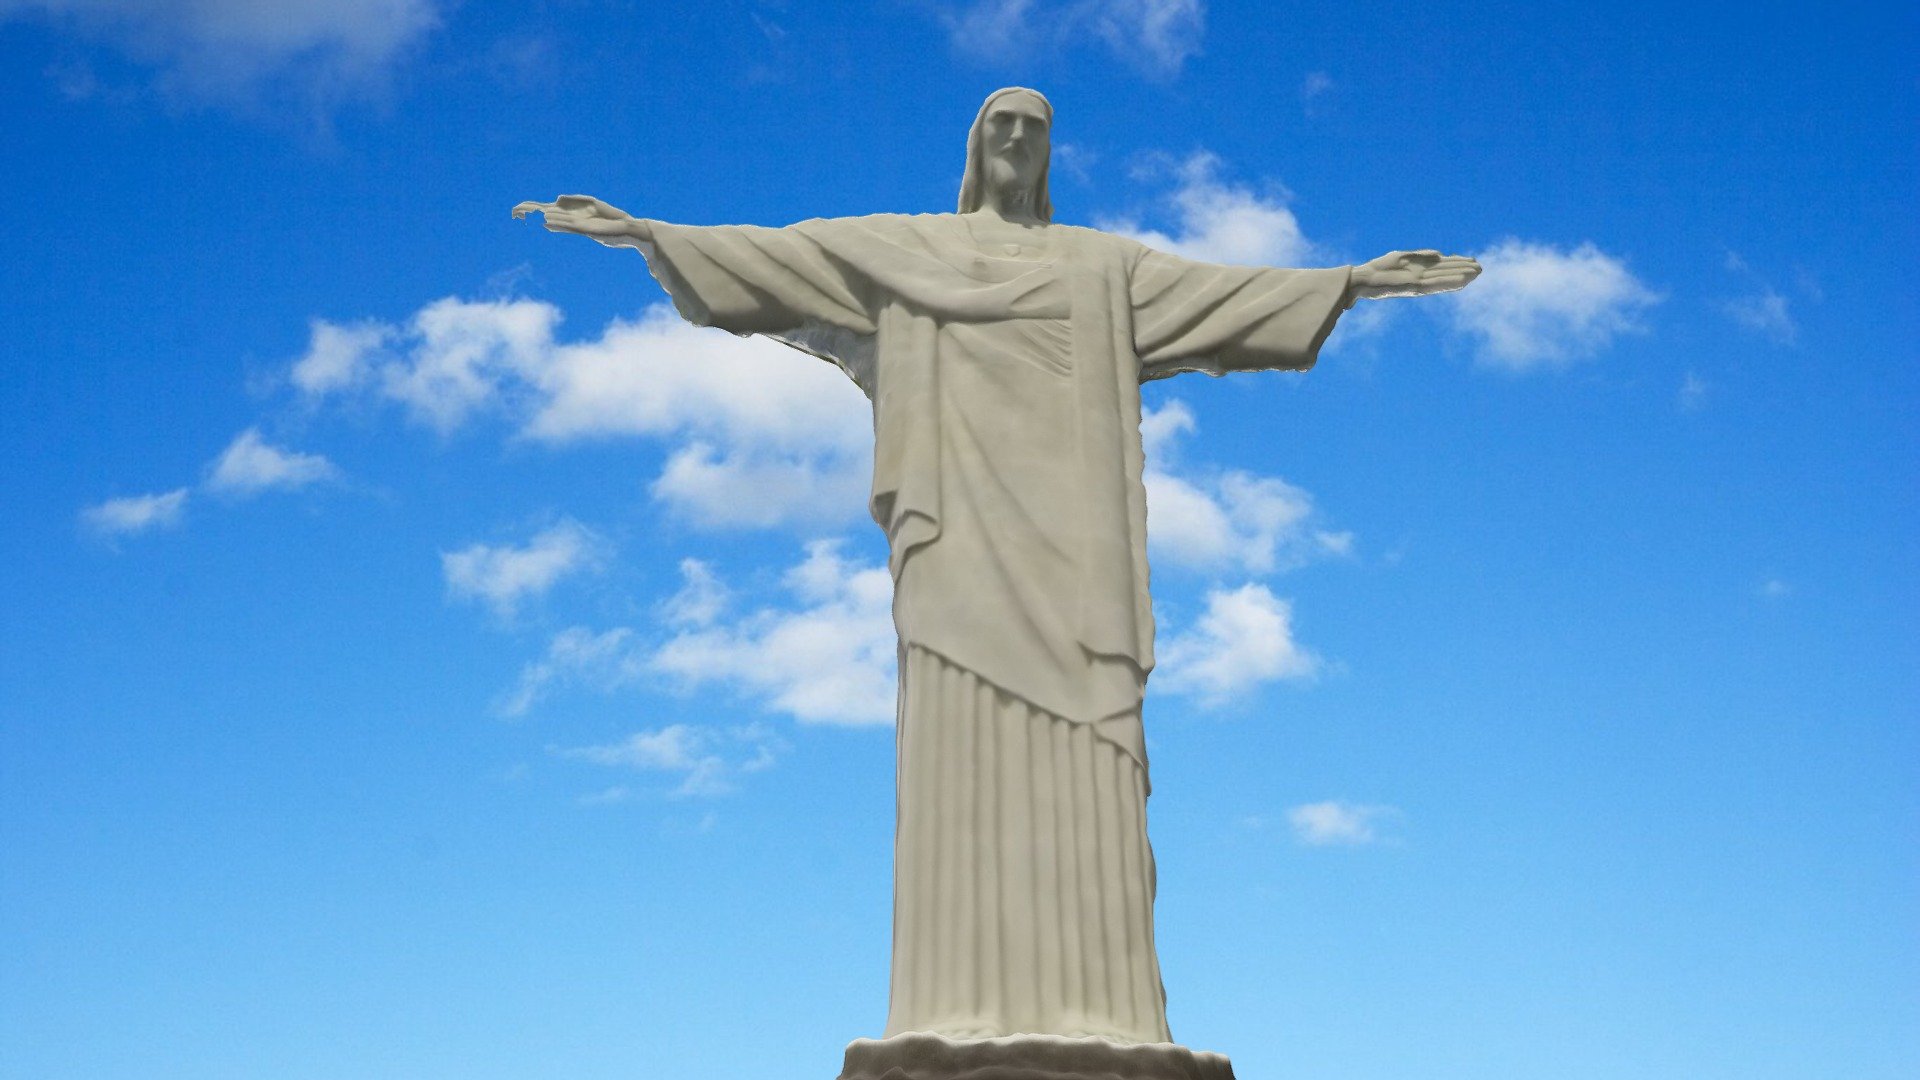 Christ the redeemer, Rio de Janeiro